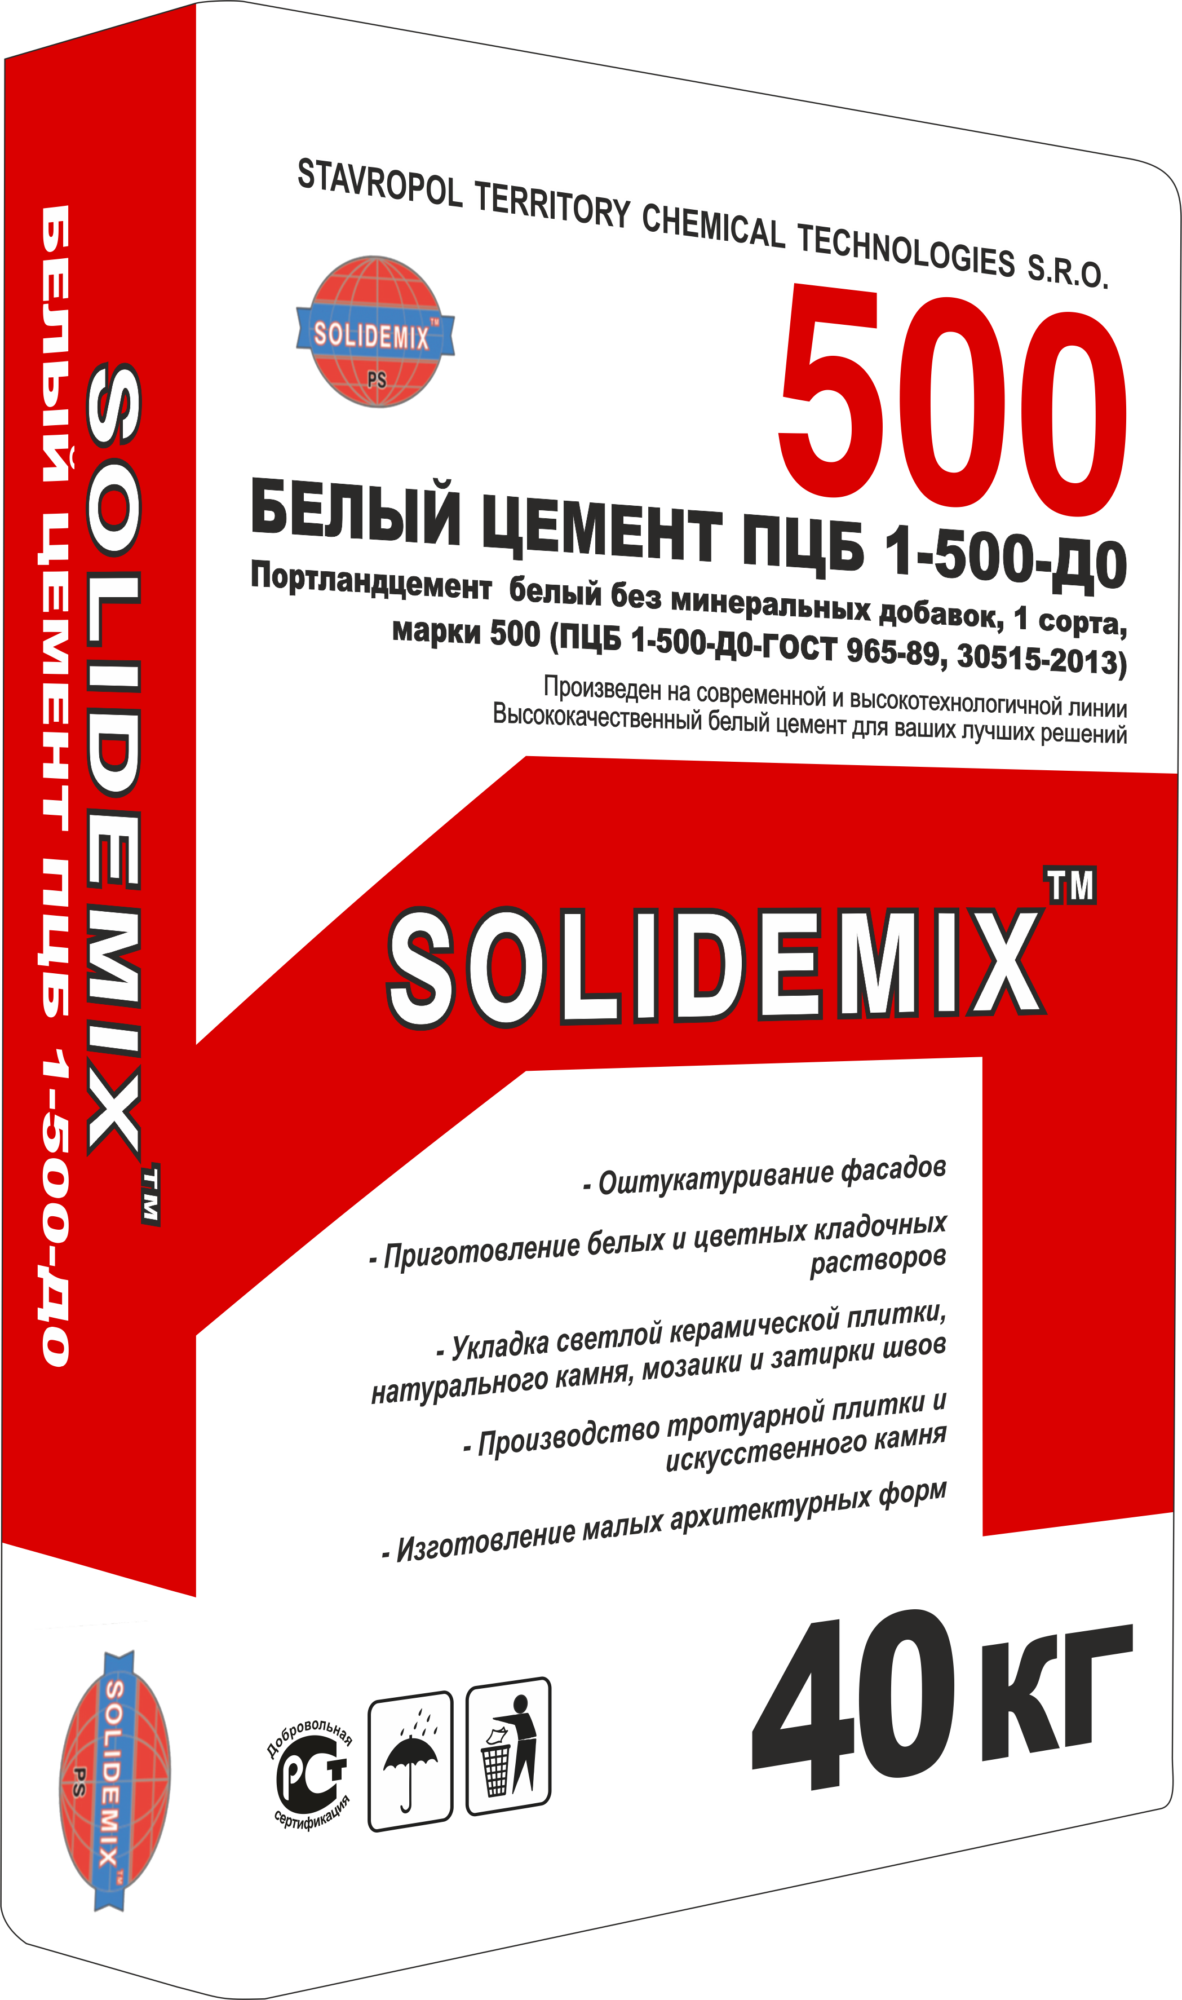 Купить Цемент «SOLIDEMIX 500» БЕЛЫЙ ПЦБ 1-500-Д0 от SOLIDEMIX